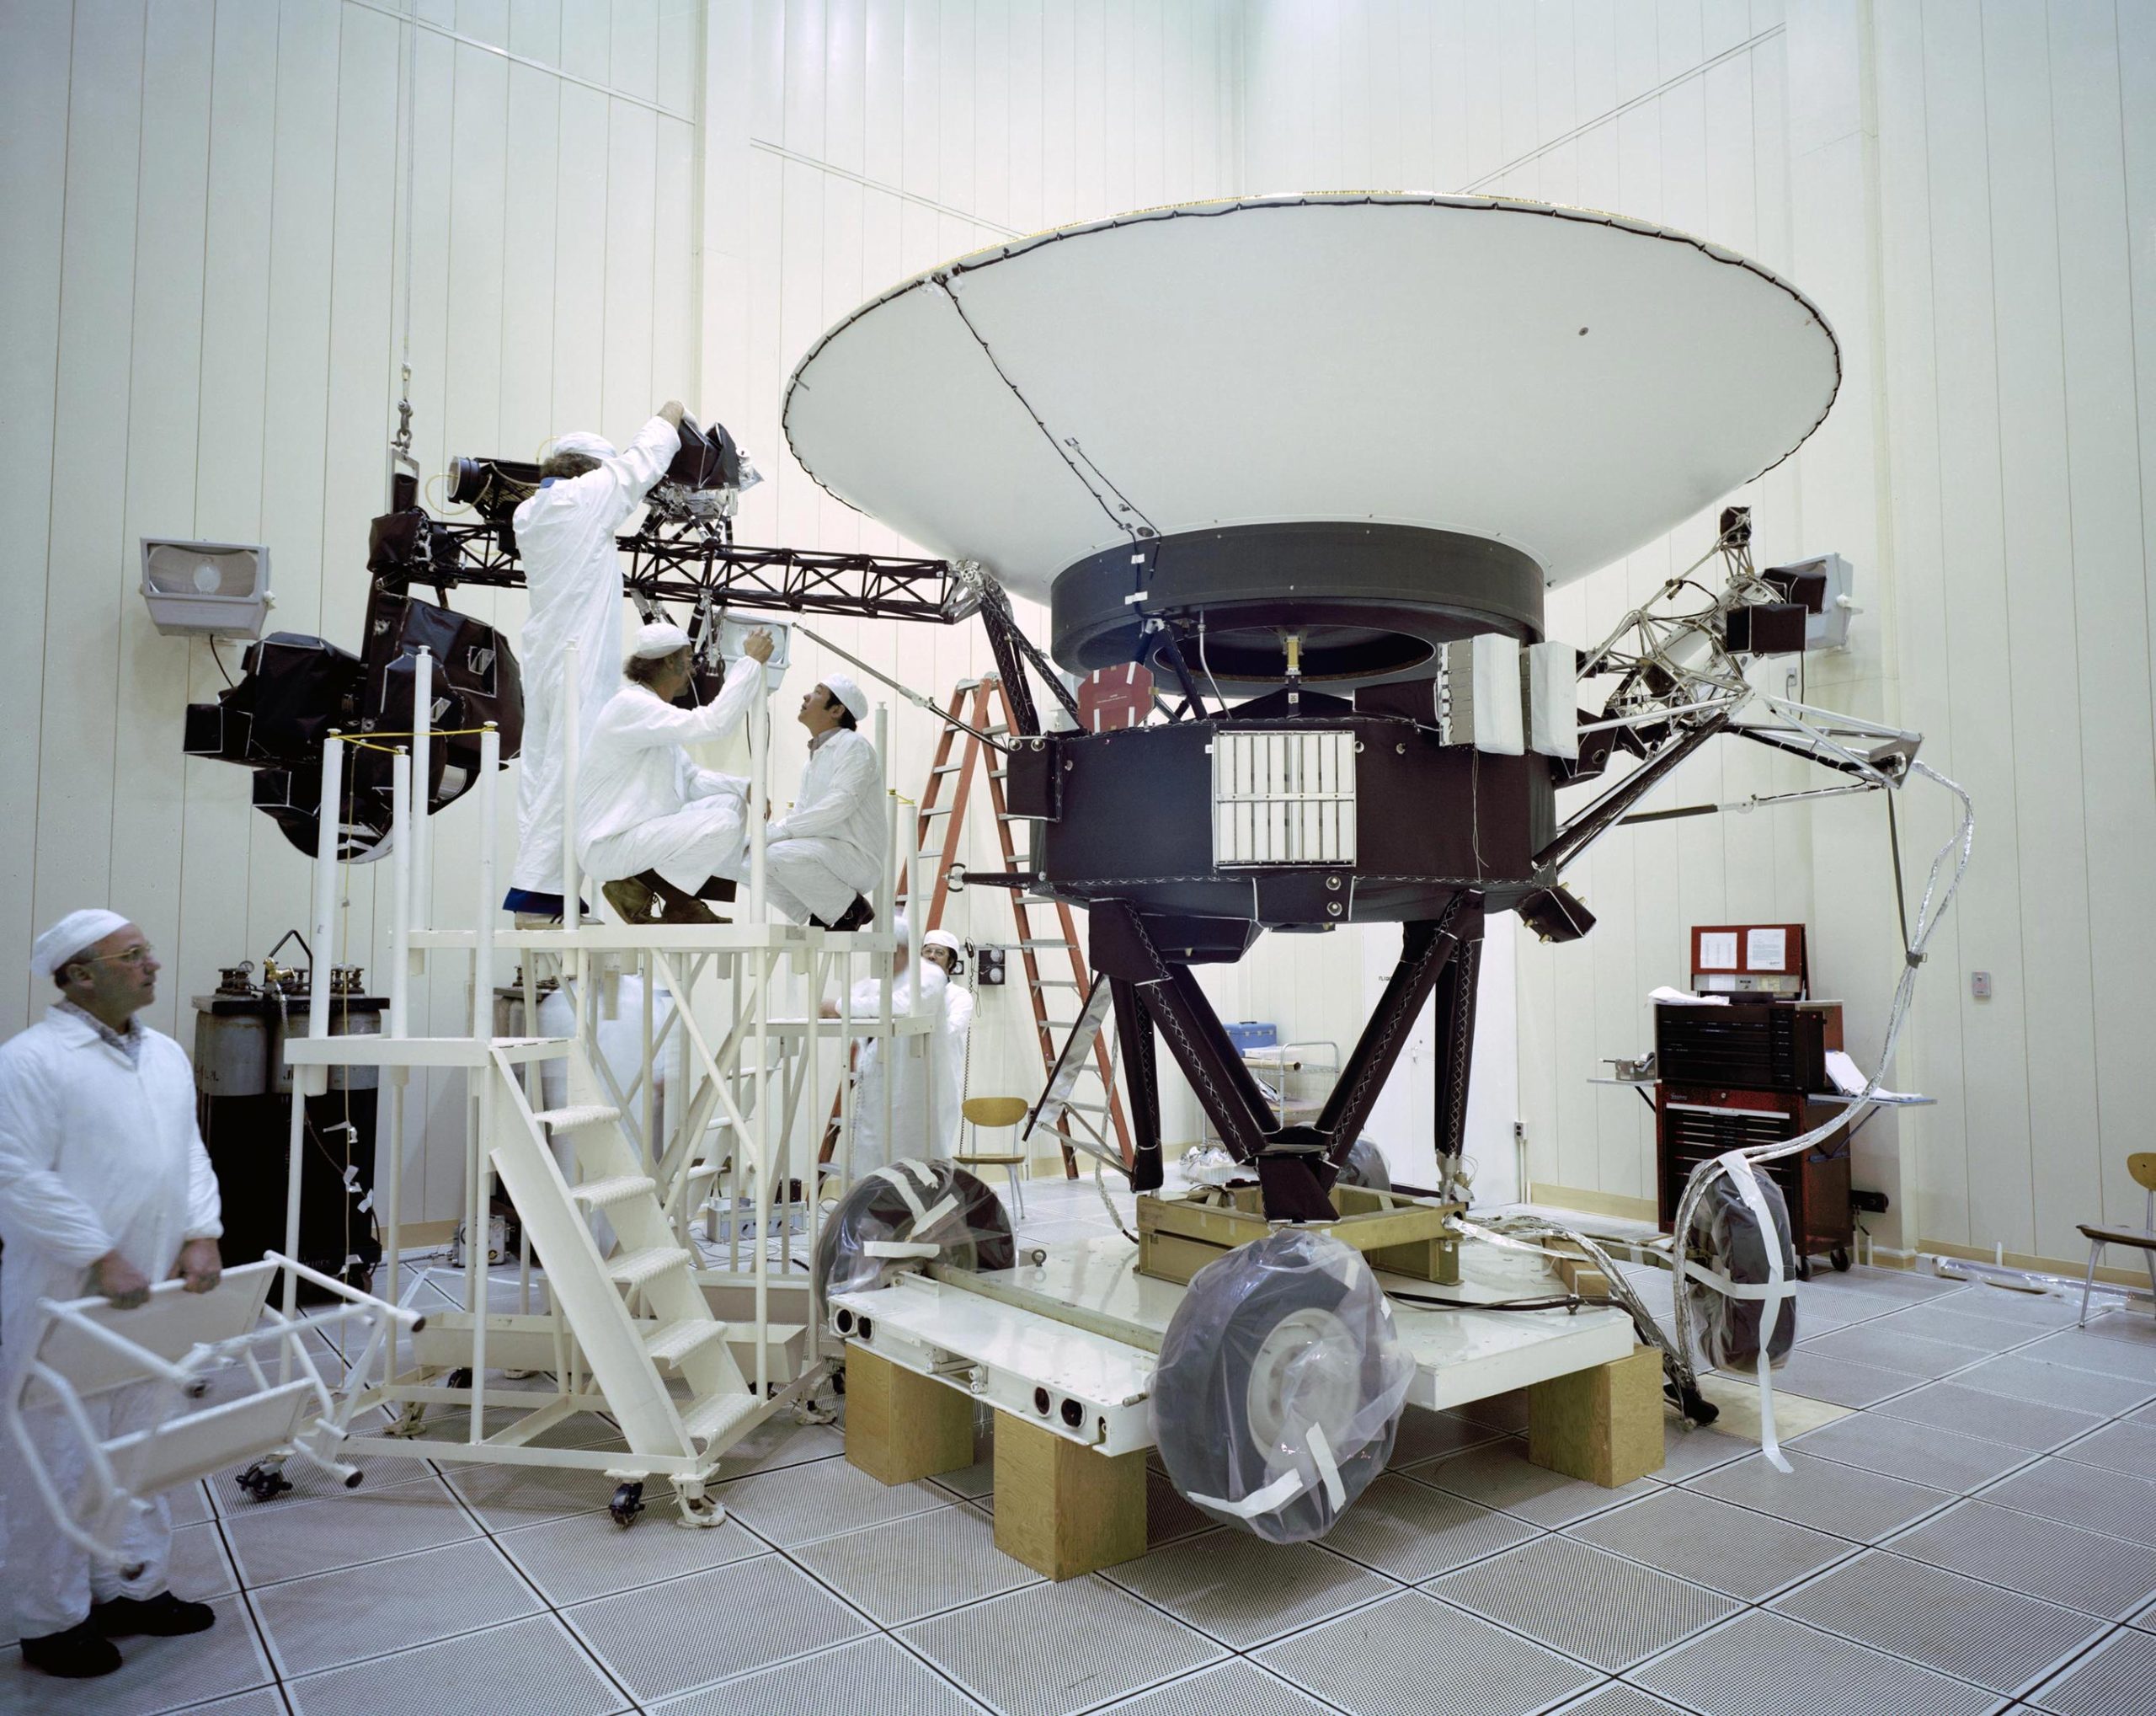 Voyager-2-Spacecraft-